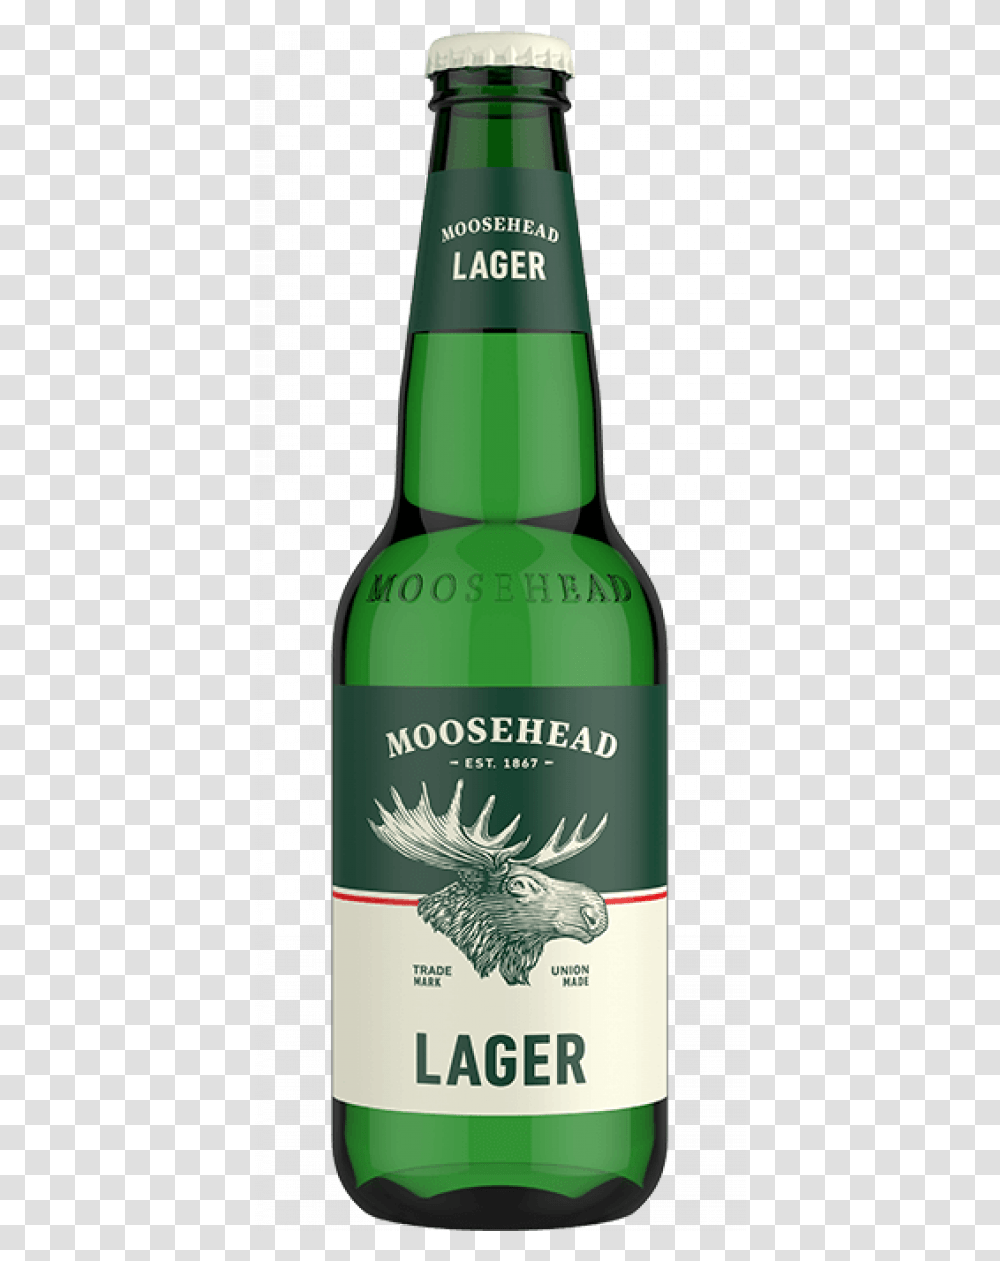 Moosehead Beer Download Moosehead Beer, Alcohol, Beverage, Drink, Bottle Transparent Png